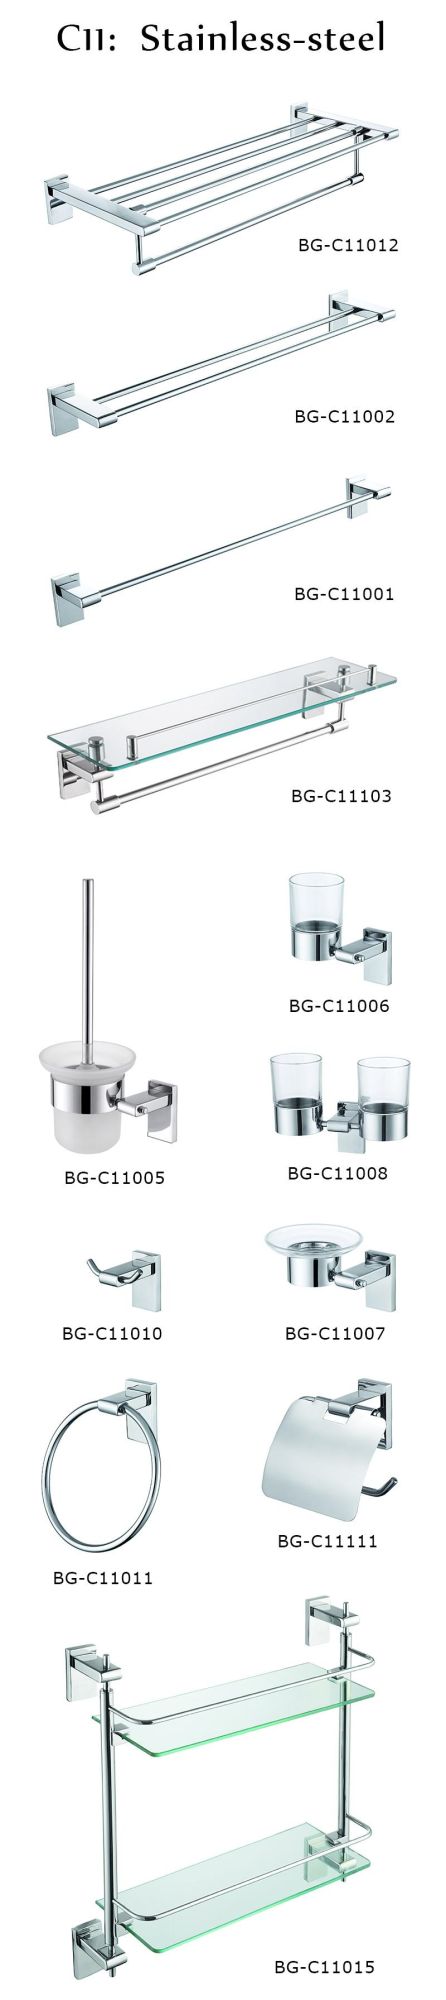 Single Glass Shelf for Bathroom Daily Convenient Usage (Bg-C11103)